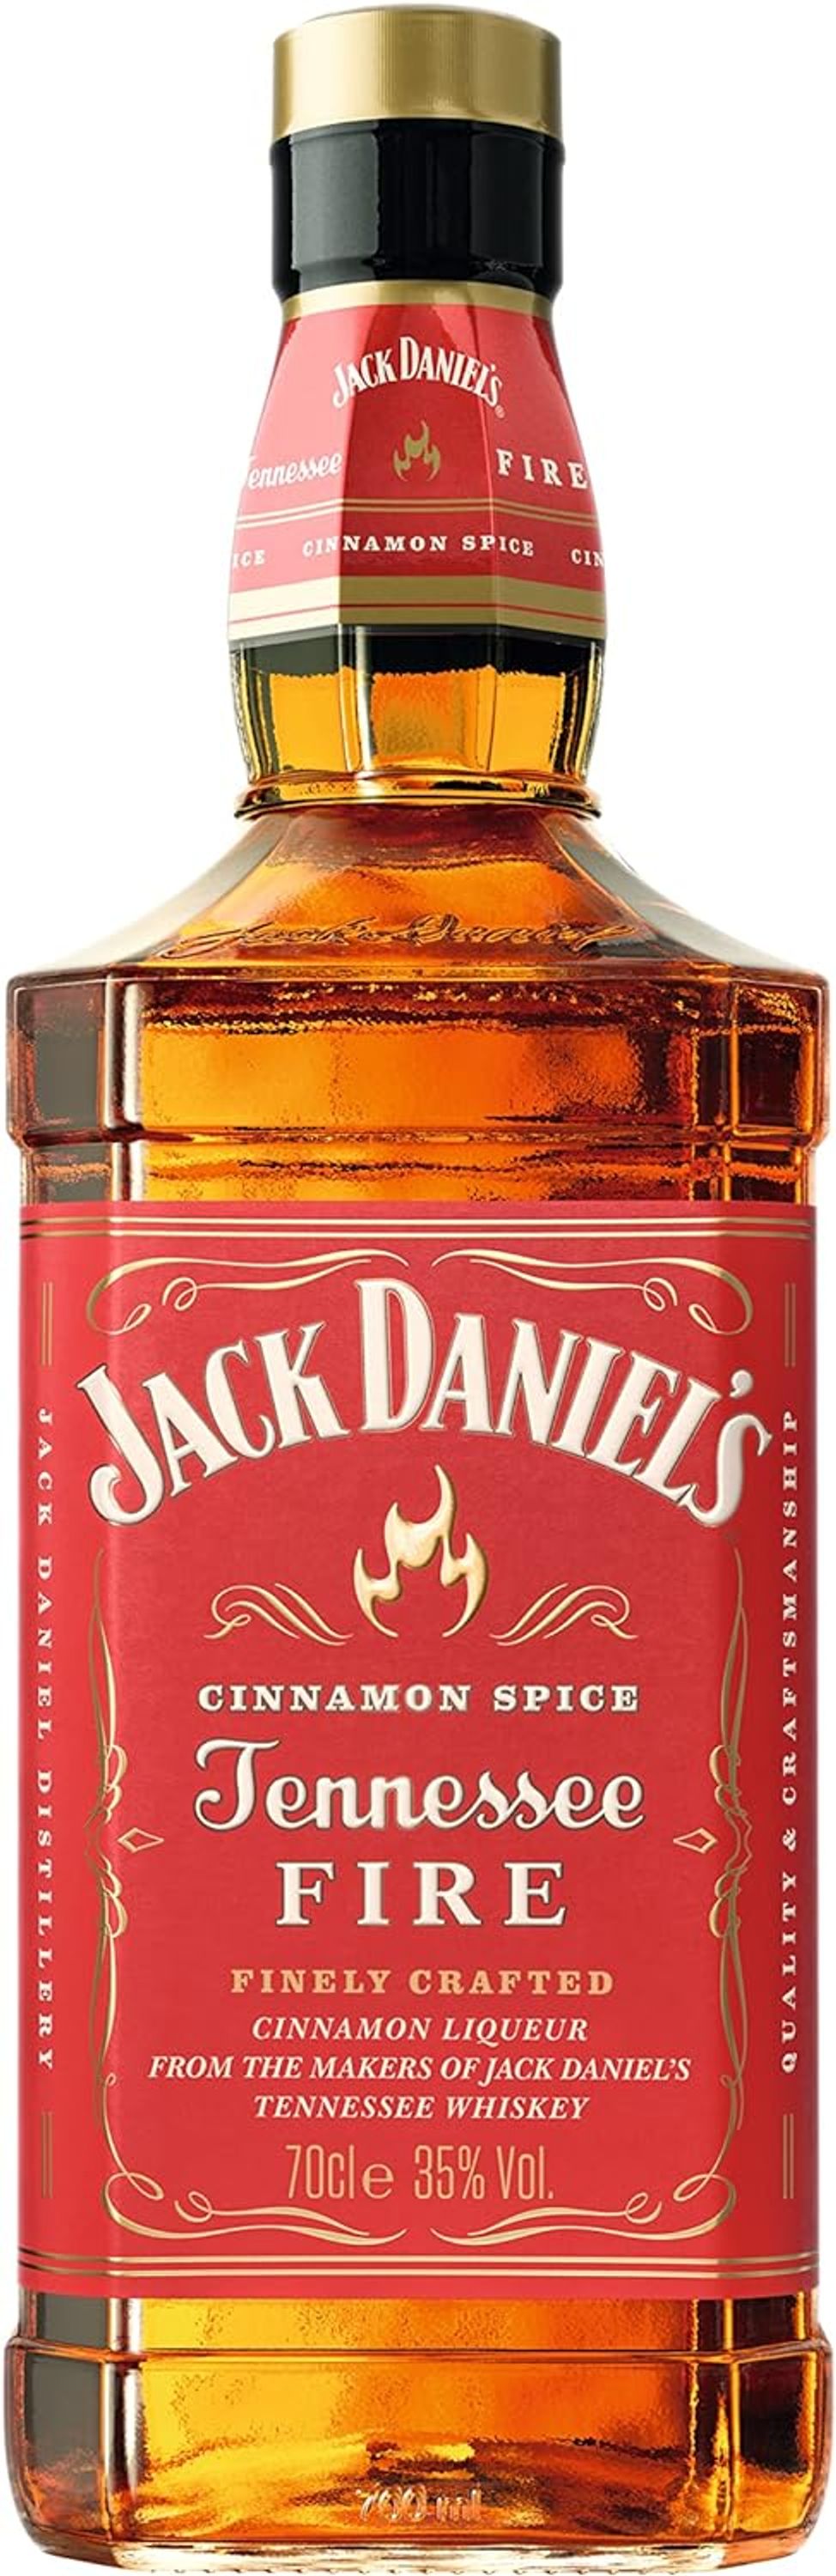 Jack Daniel's Tennessee Fire 0,7l, alc. 35 Vol.-%